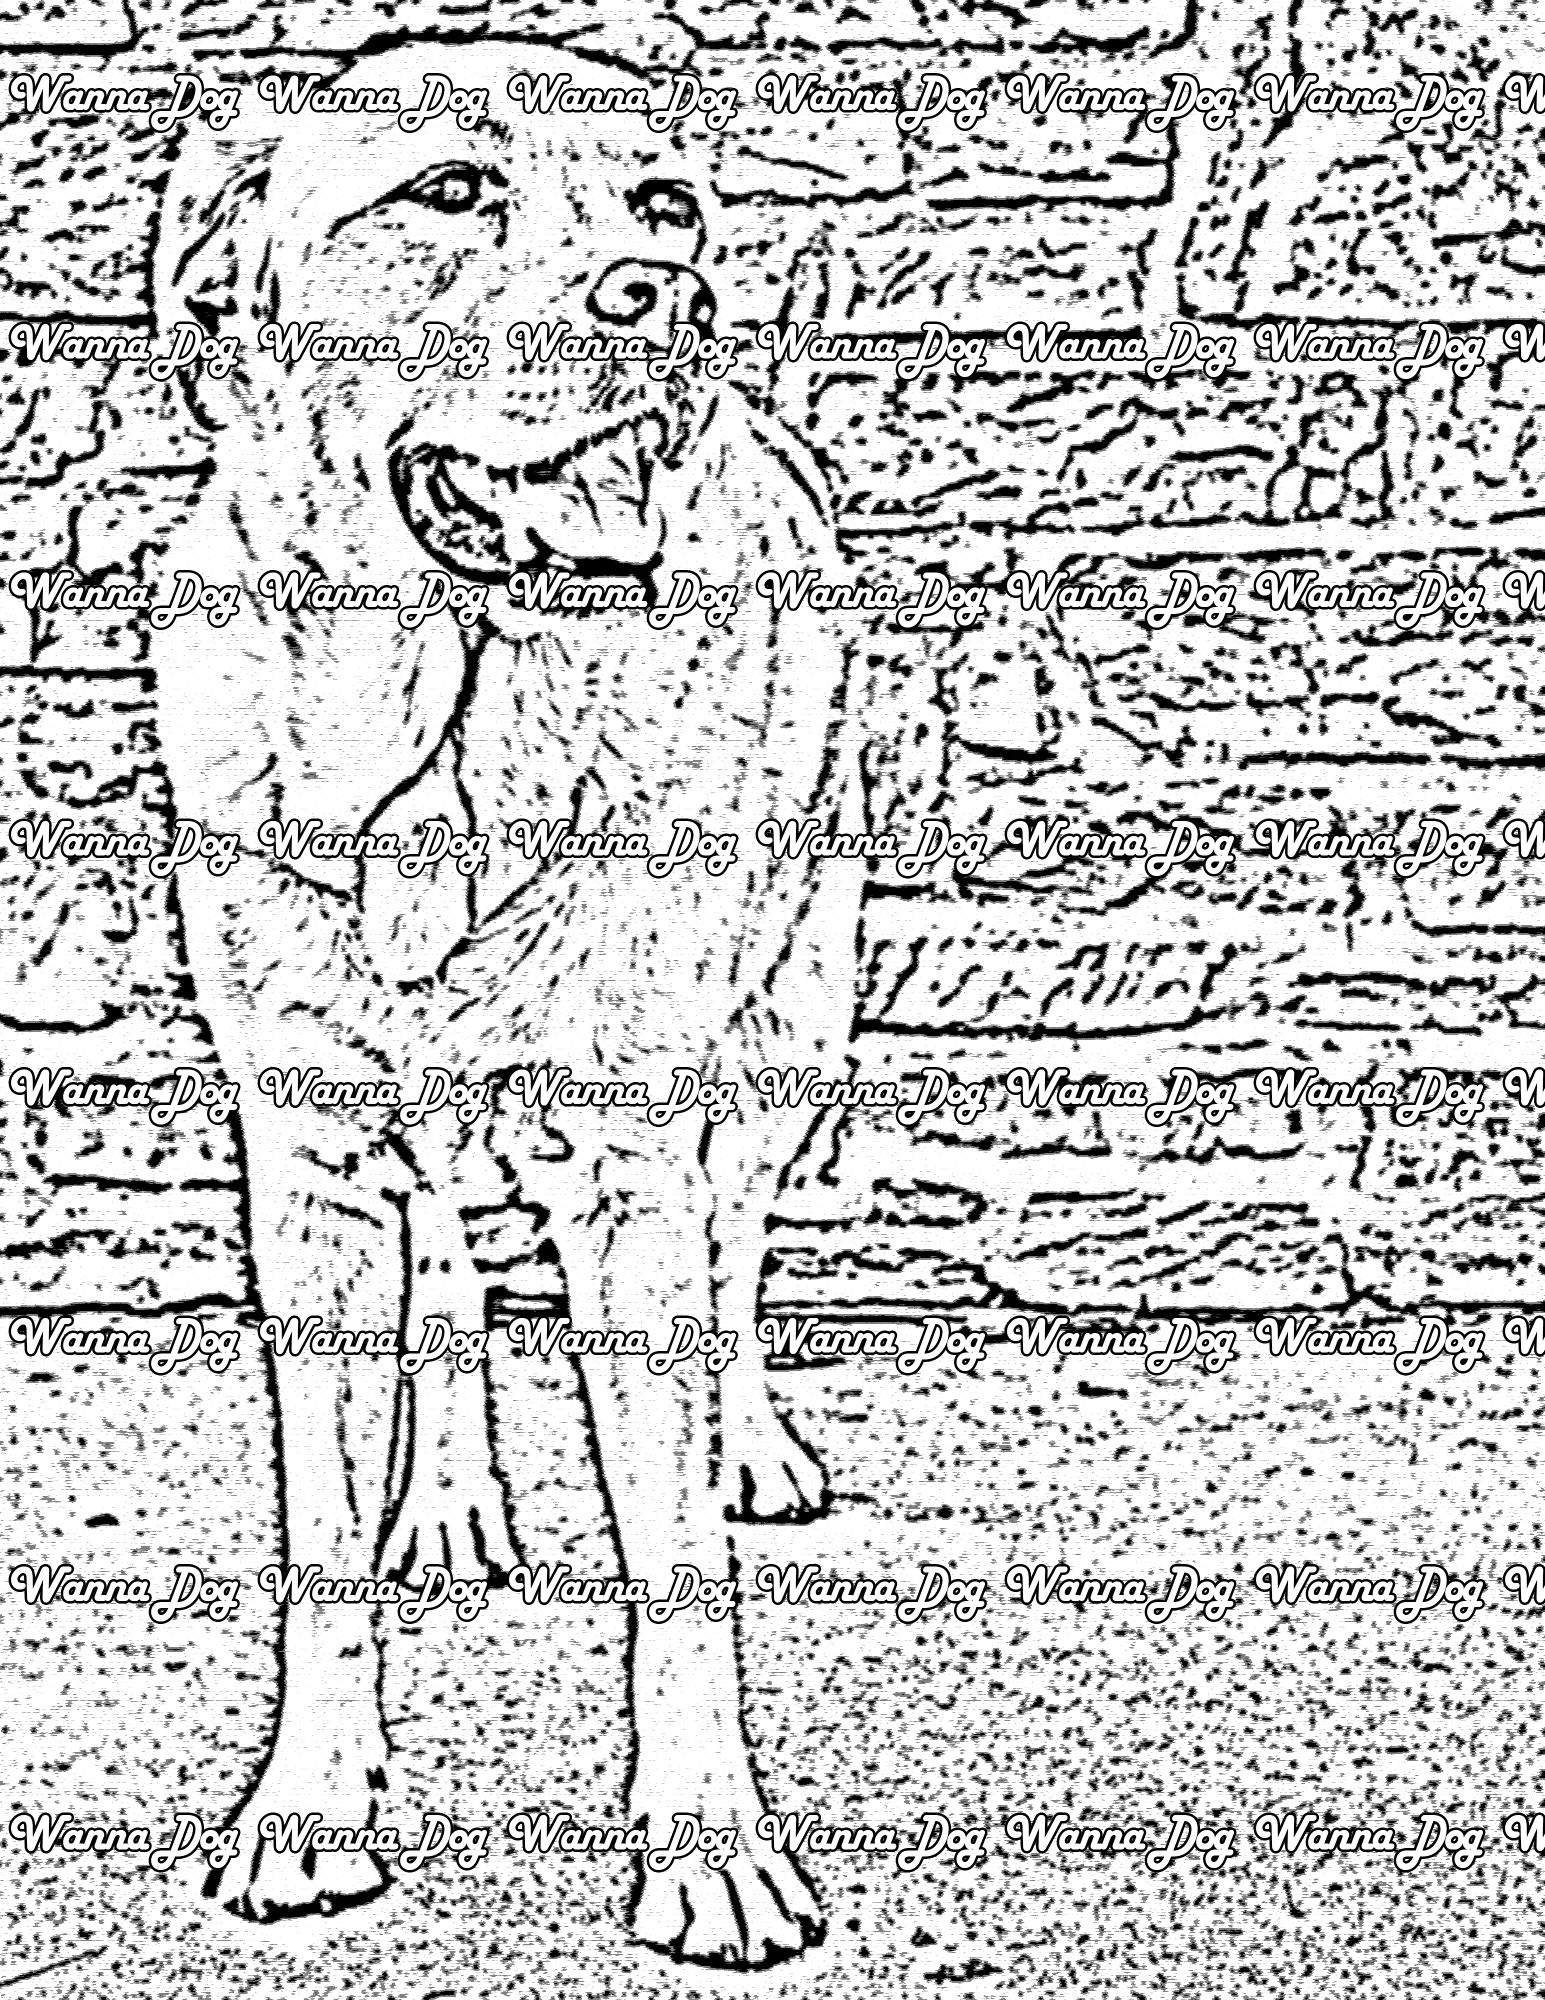 Labrador Retriever Coloring Page of a Labrador Retriever standing next to a brick wall